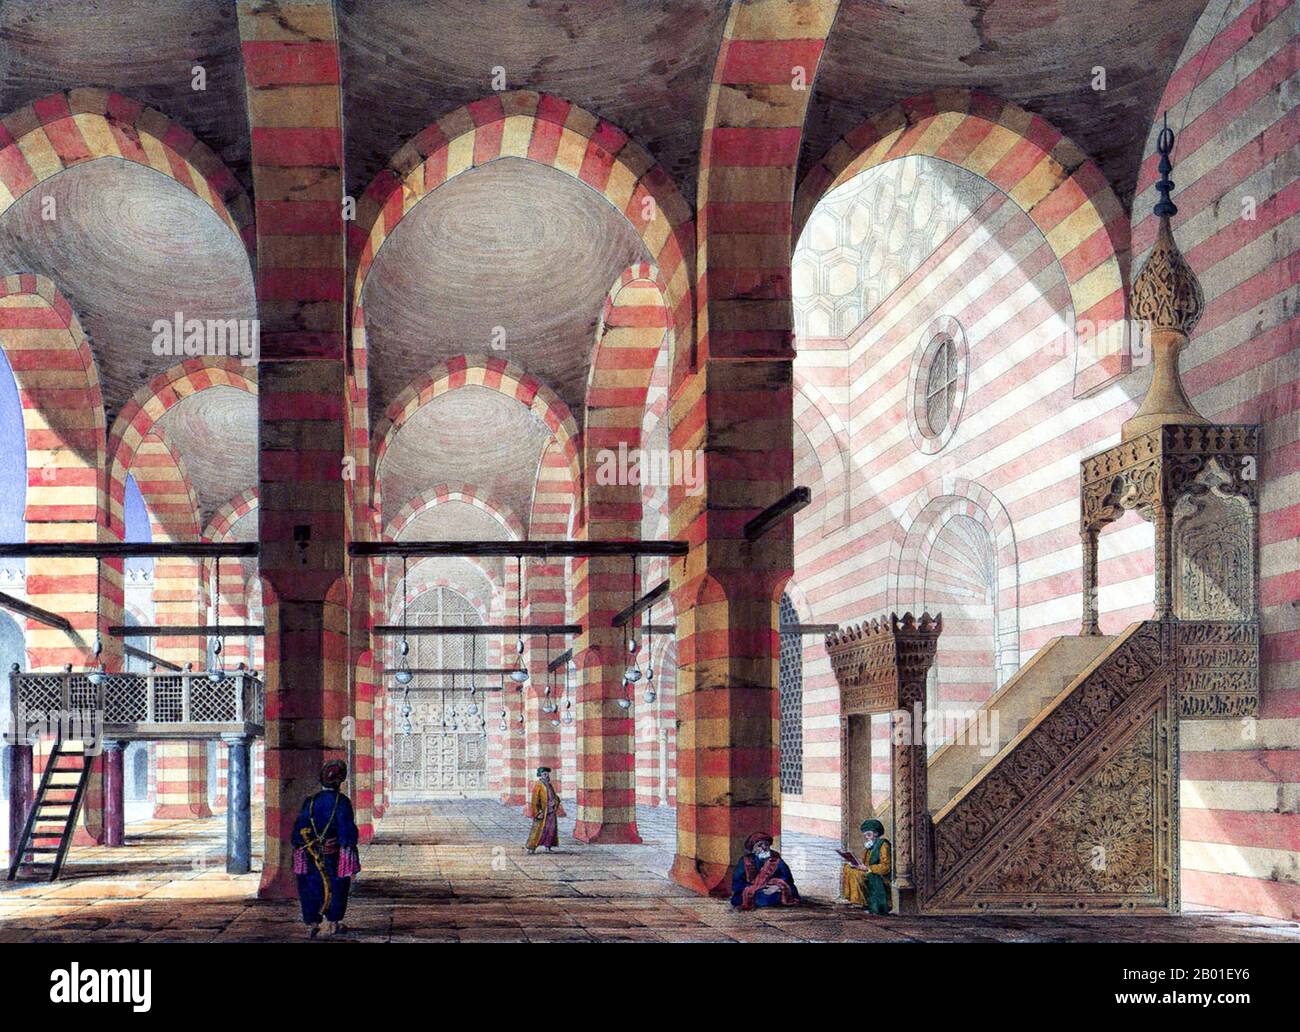 Ägypten: Blick auf das Innere der Moschee von Sultan al-Zahir Barquq, Kairo. Malerei von Pascal Coste (26. November 1787 bis 8. Februar 1879), c. 1839. Die Moschee von Sultan al-Zahir Barquq umfasst ein Madrasa- oder islamisches Seminar und eine Sufi khanqah in ihren Bezirken. Es wurde zwischen 1384 und 1386 CE gebaut. Der Architekt Shihab al DIN Ahmad ibn Muhammad al Tuluni, der einer Familie von Hofarchitekten und Gutachtern angehörte, war für einen Teil des Baus verantwortlich. Stockfoto